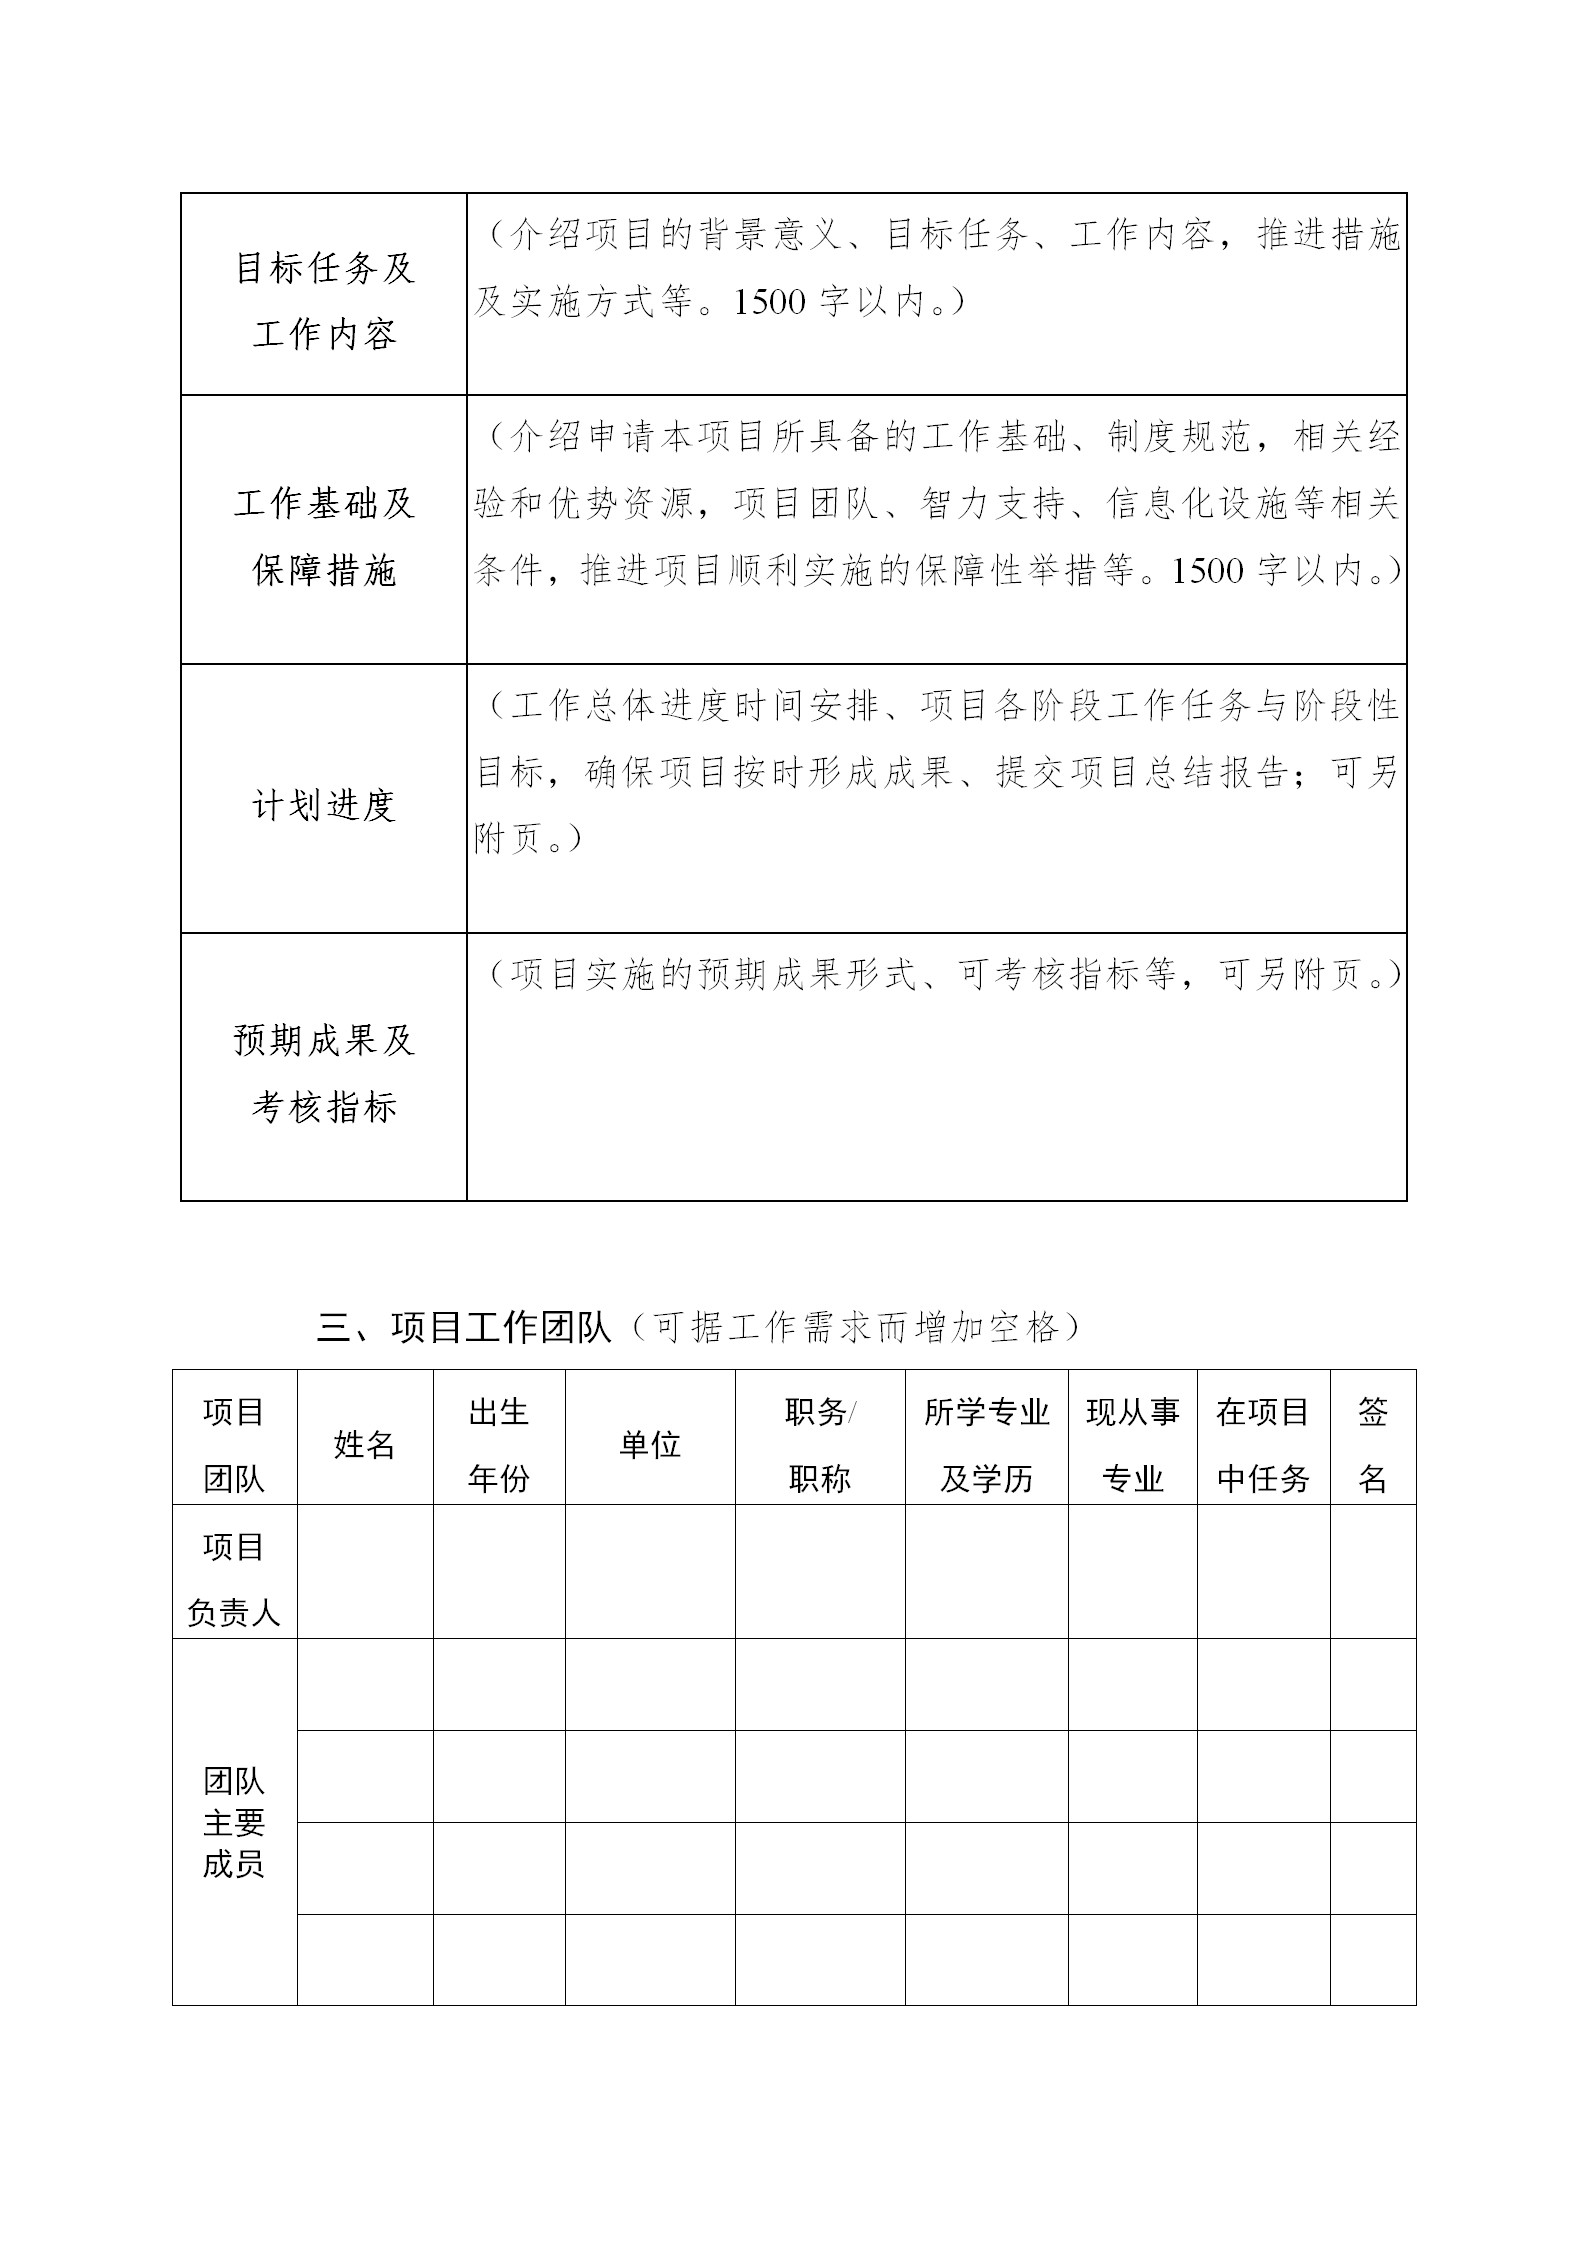 广东发布2020年度省知识产权工作专项资金项目库知识产权促进工作项目申报指南